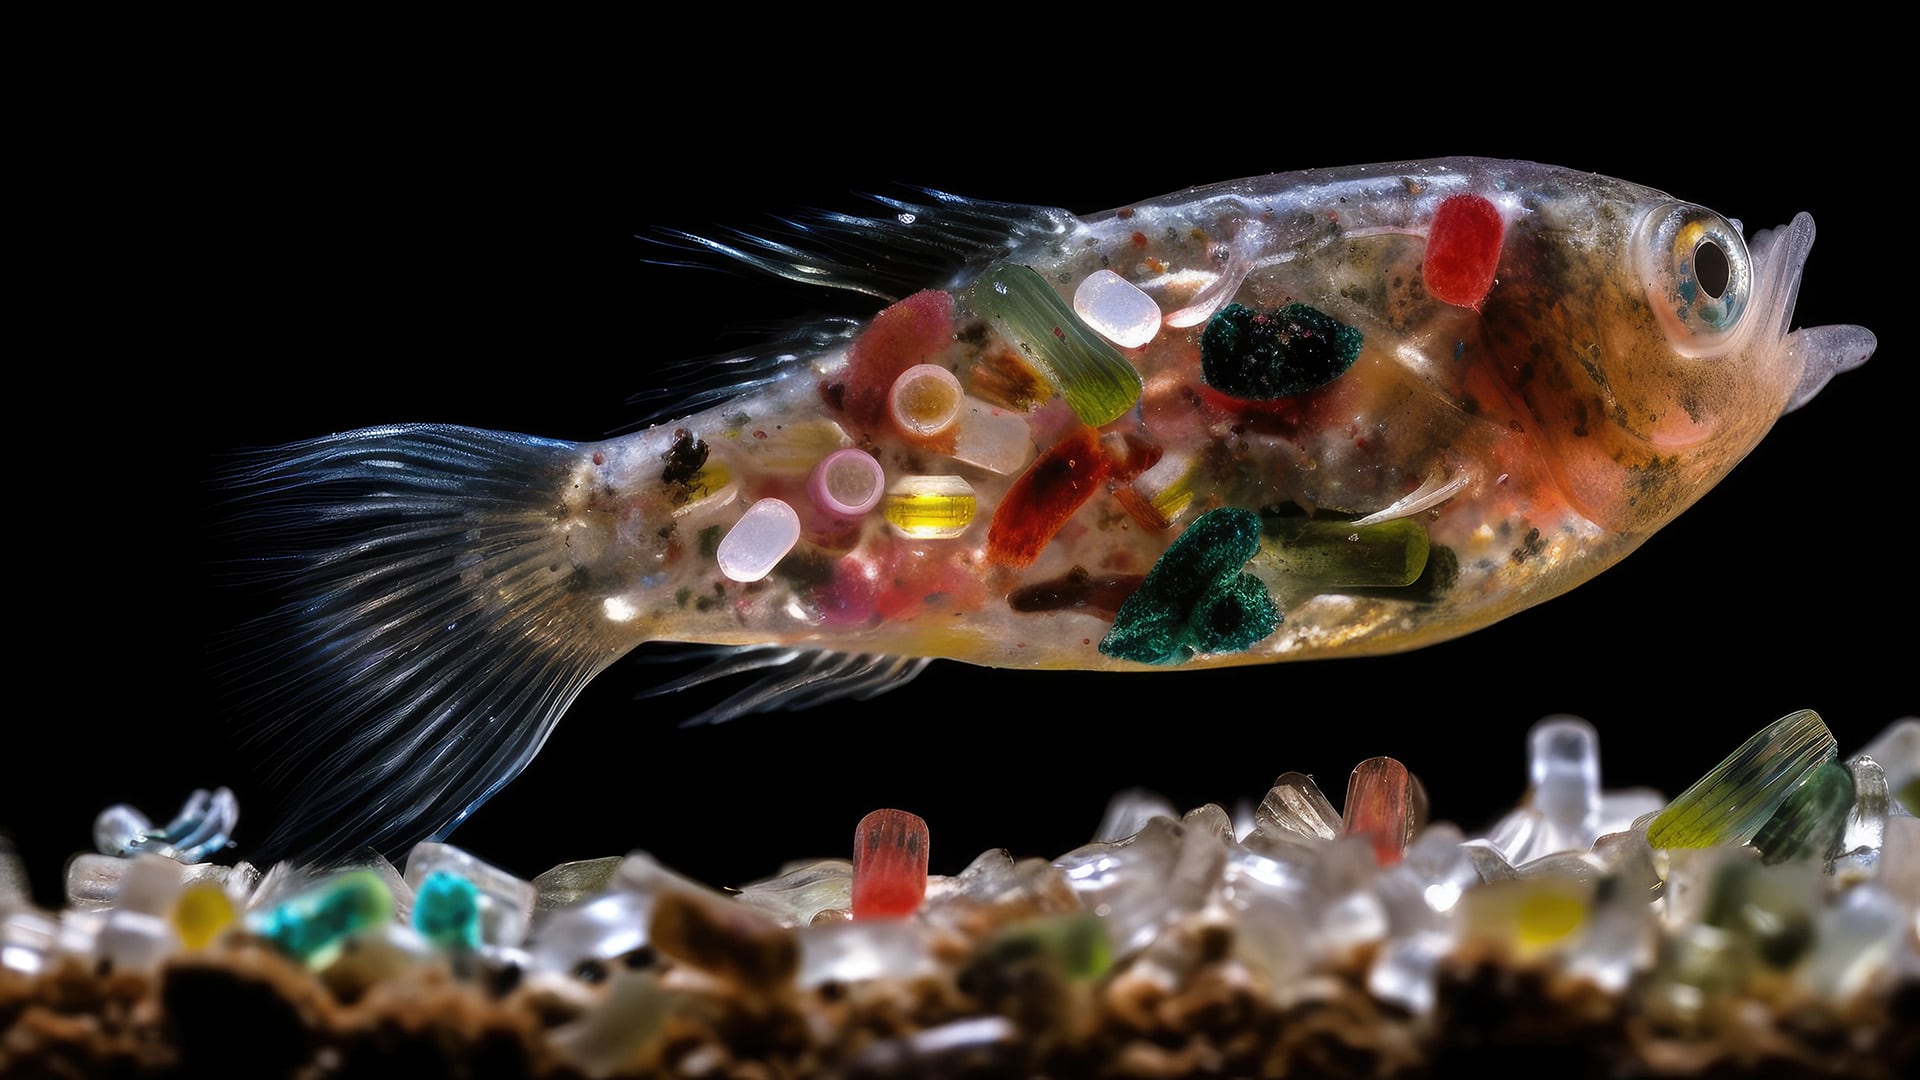 El océano, un ecosistema en peligro, con millones de toneladas de plástico dispersas en sus aguas (Getty)